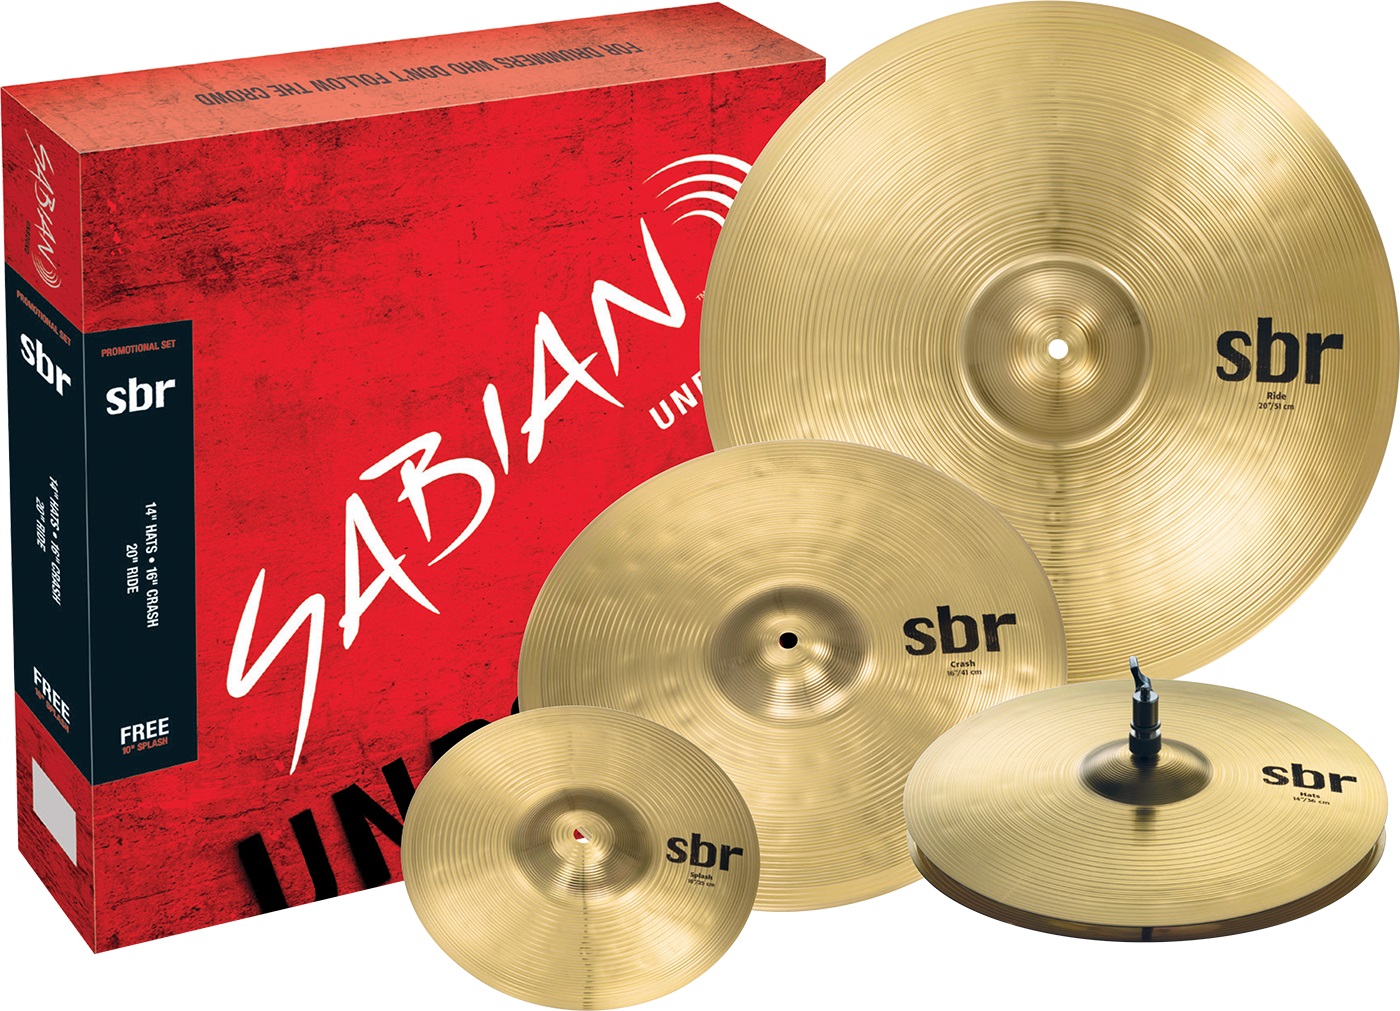 Тарелки, барабаны для ударных установок Sabian SBr Promotional Pack